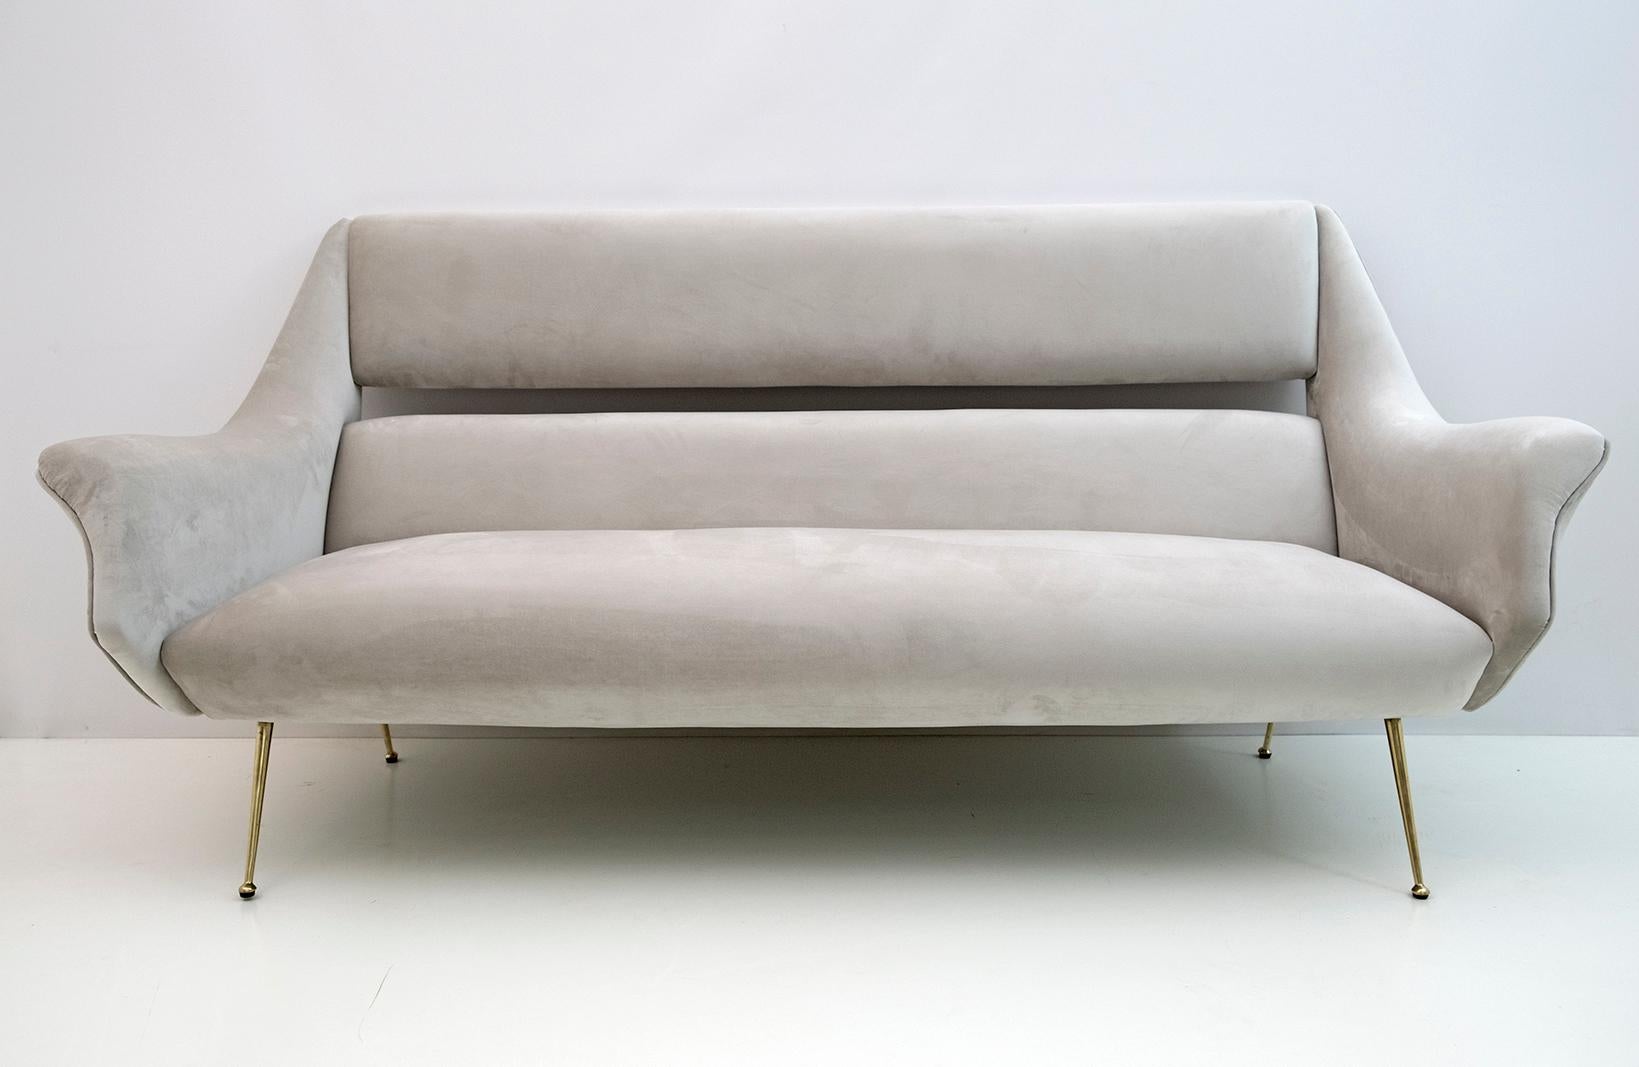 Sofa, entworfen von Gigi Radice für Minotti. Gefertigt aus Massivholz mit hellgrauer Samtpolsterung und polierten Messingbeinen. Das Sofa ist authentisch, nur die Polsterung wurde ersetzt.